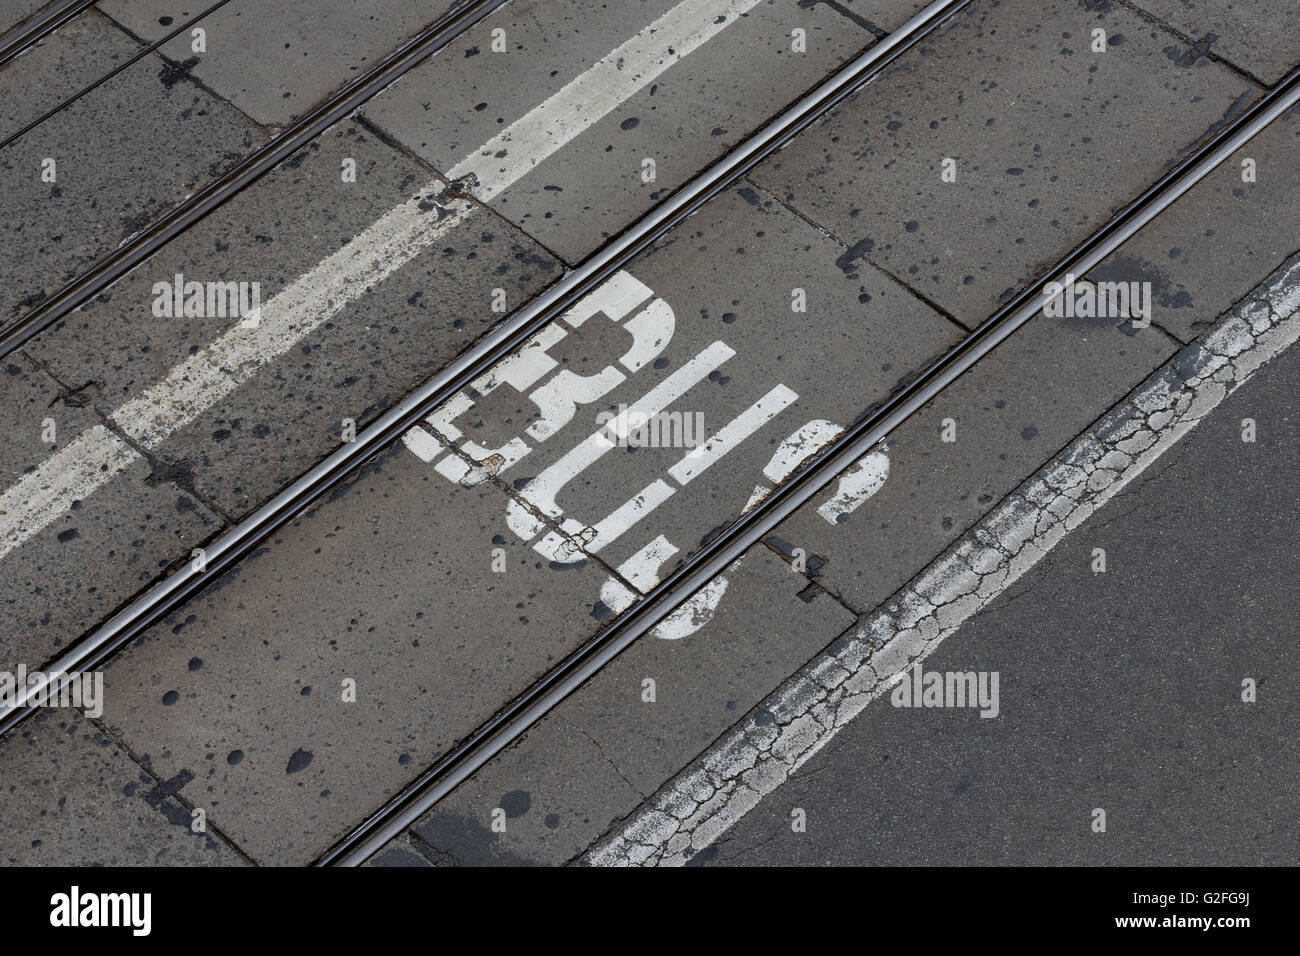 Busspur - Wort geschrieben auf Asphalt Straße Stockfoto